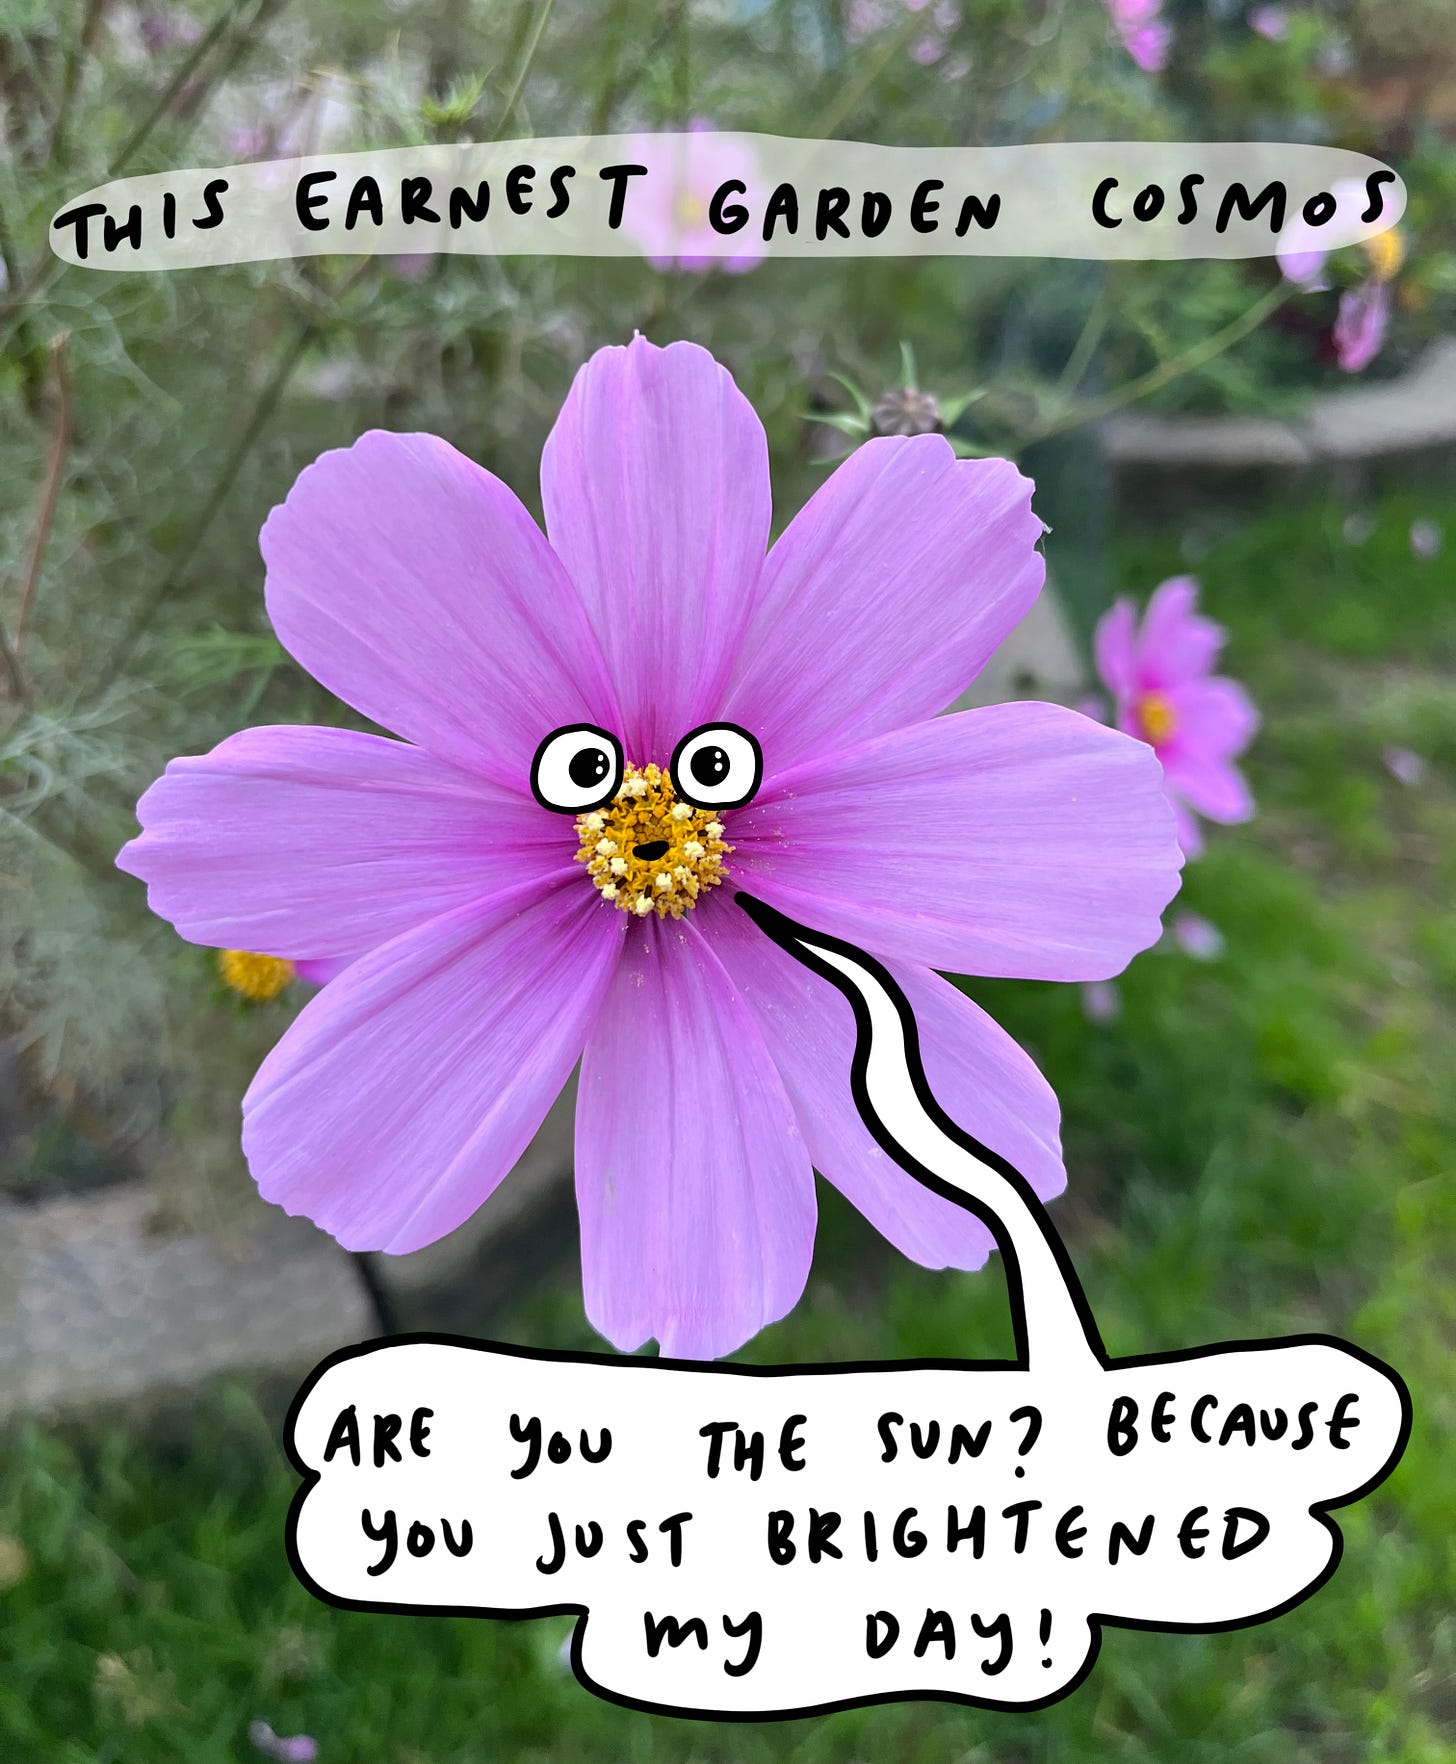 photo of a garden cosmos with cute cartoon eyes